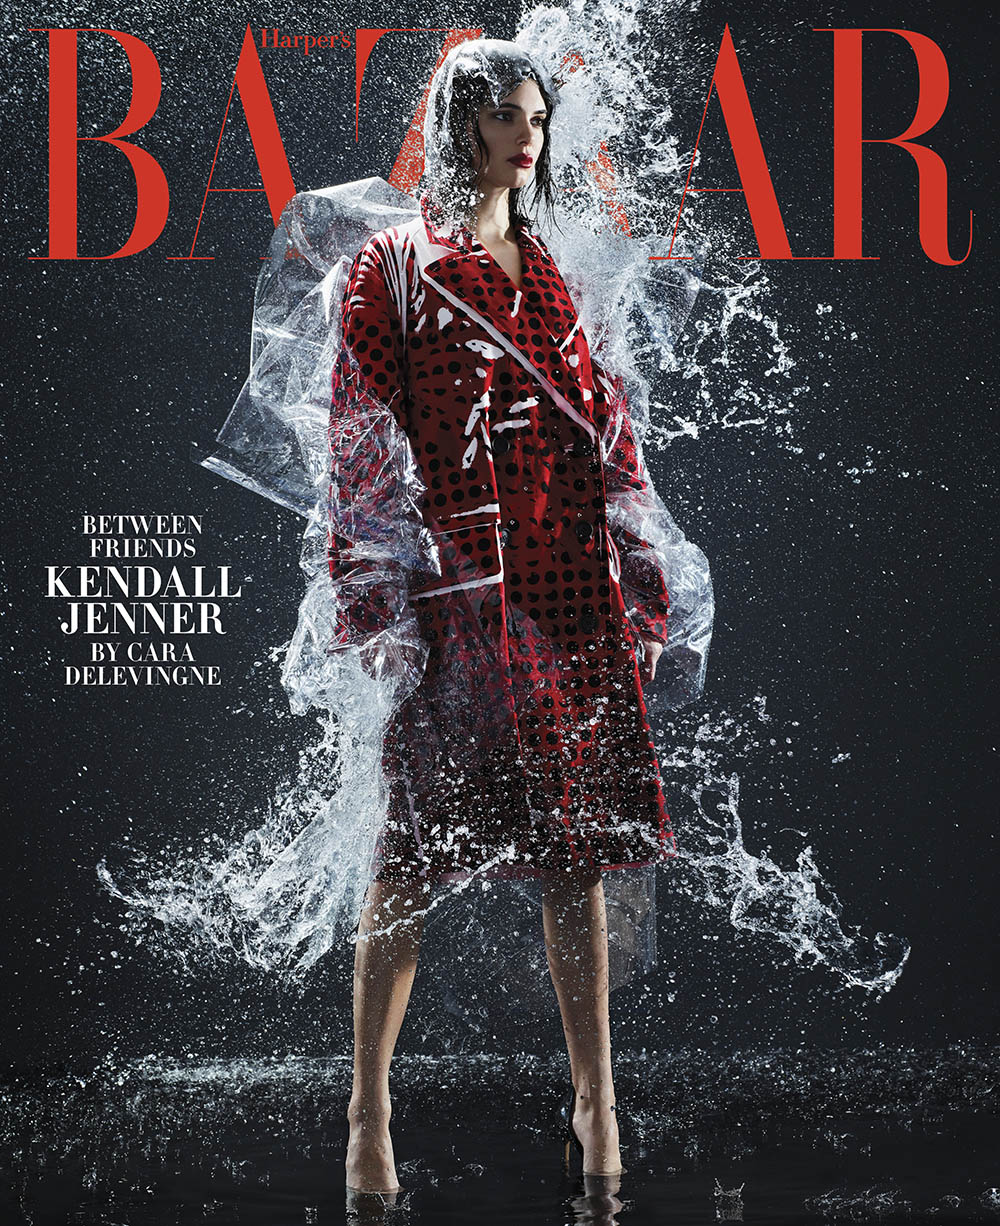 Kendall Jenner covers Harper’s Bazaar US February 2018 by Sølve Sundsbø